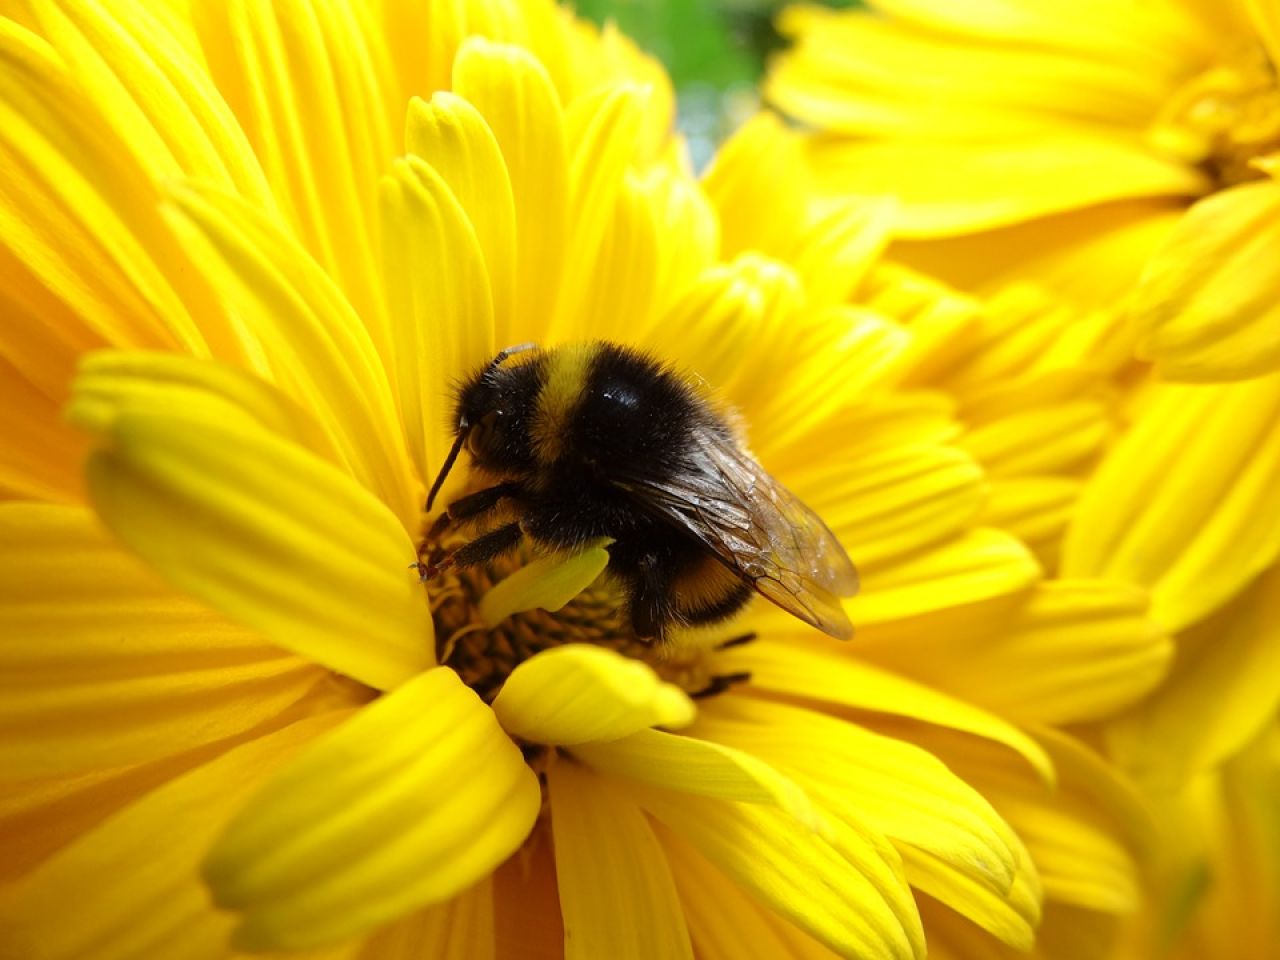 Pyłek pszczeli jako suplement pochodzenia naturalnego